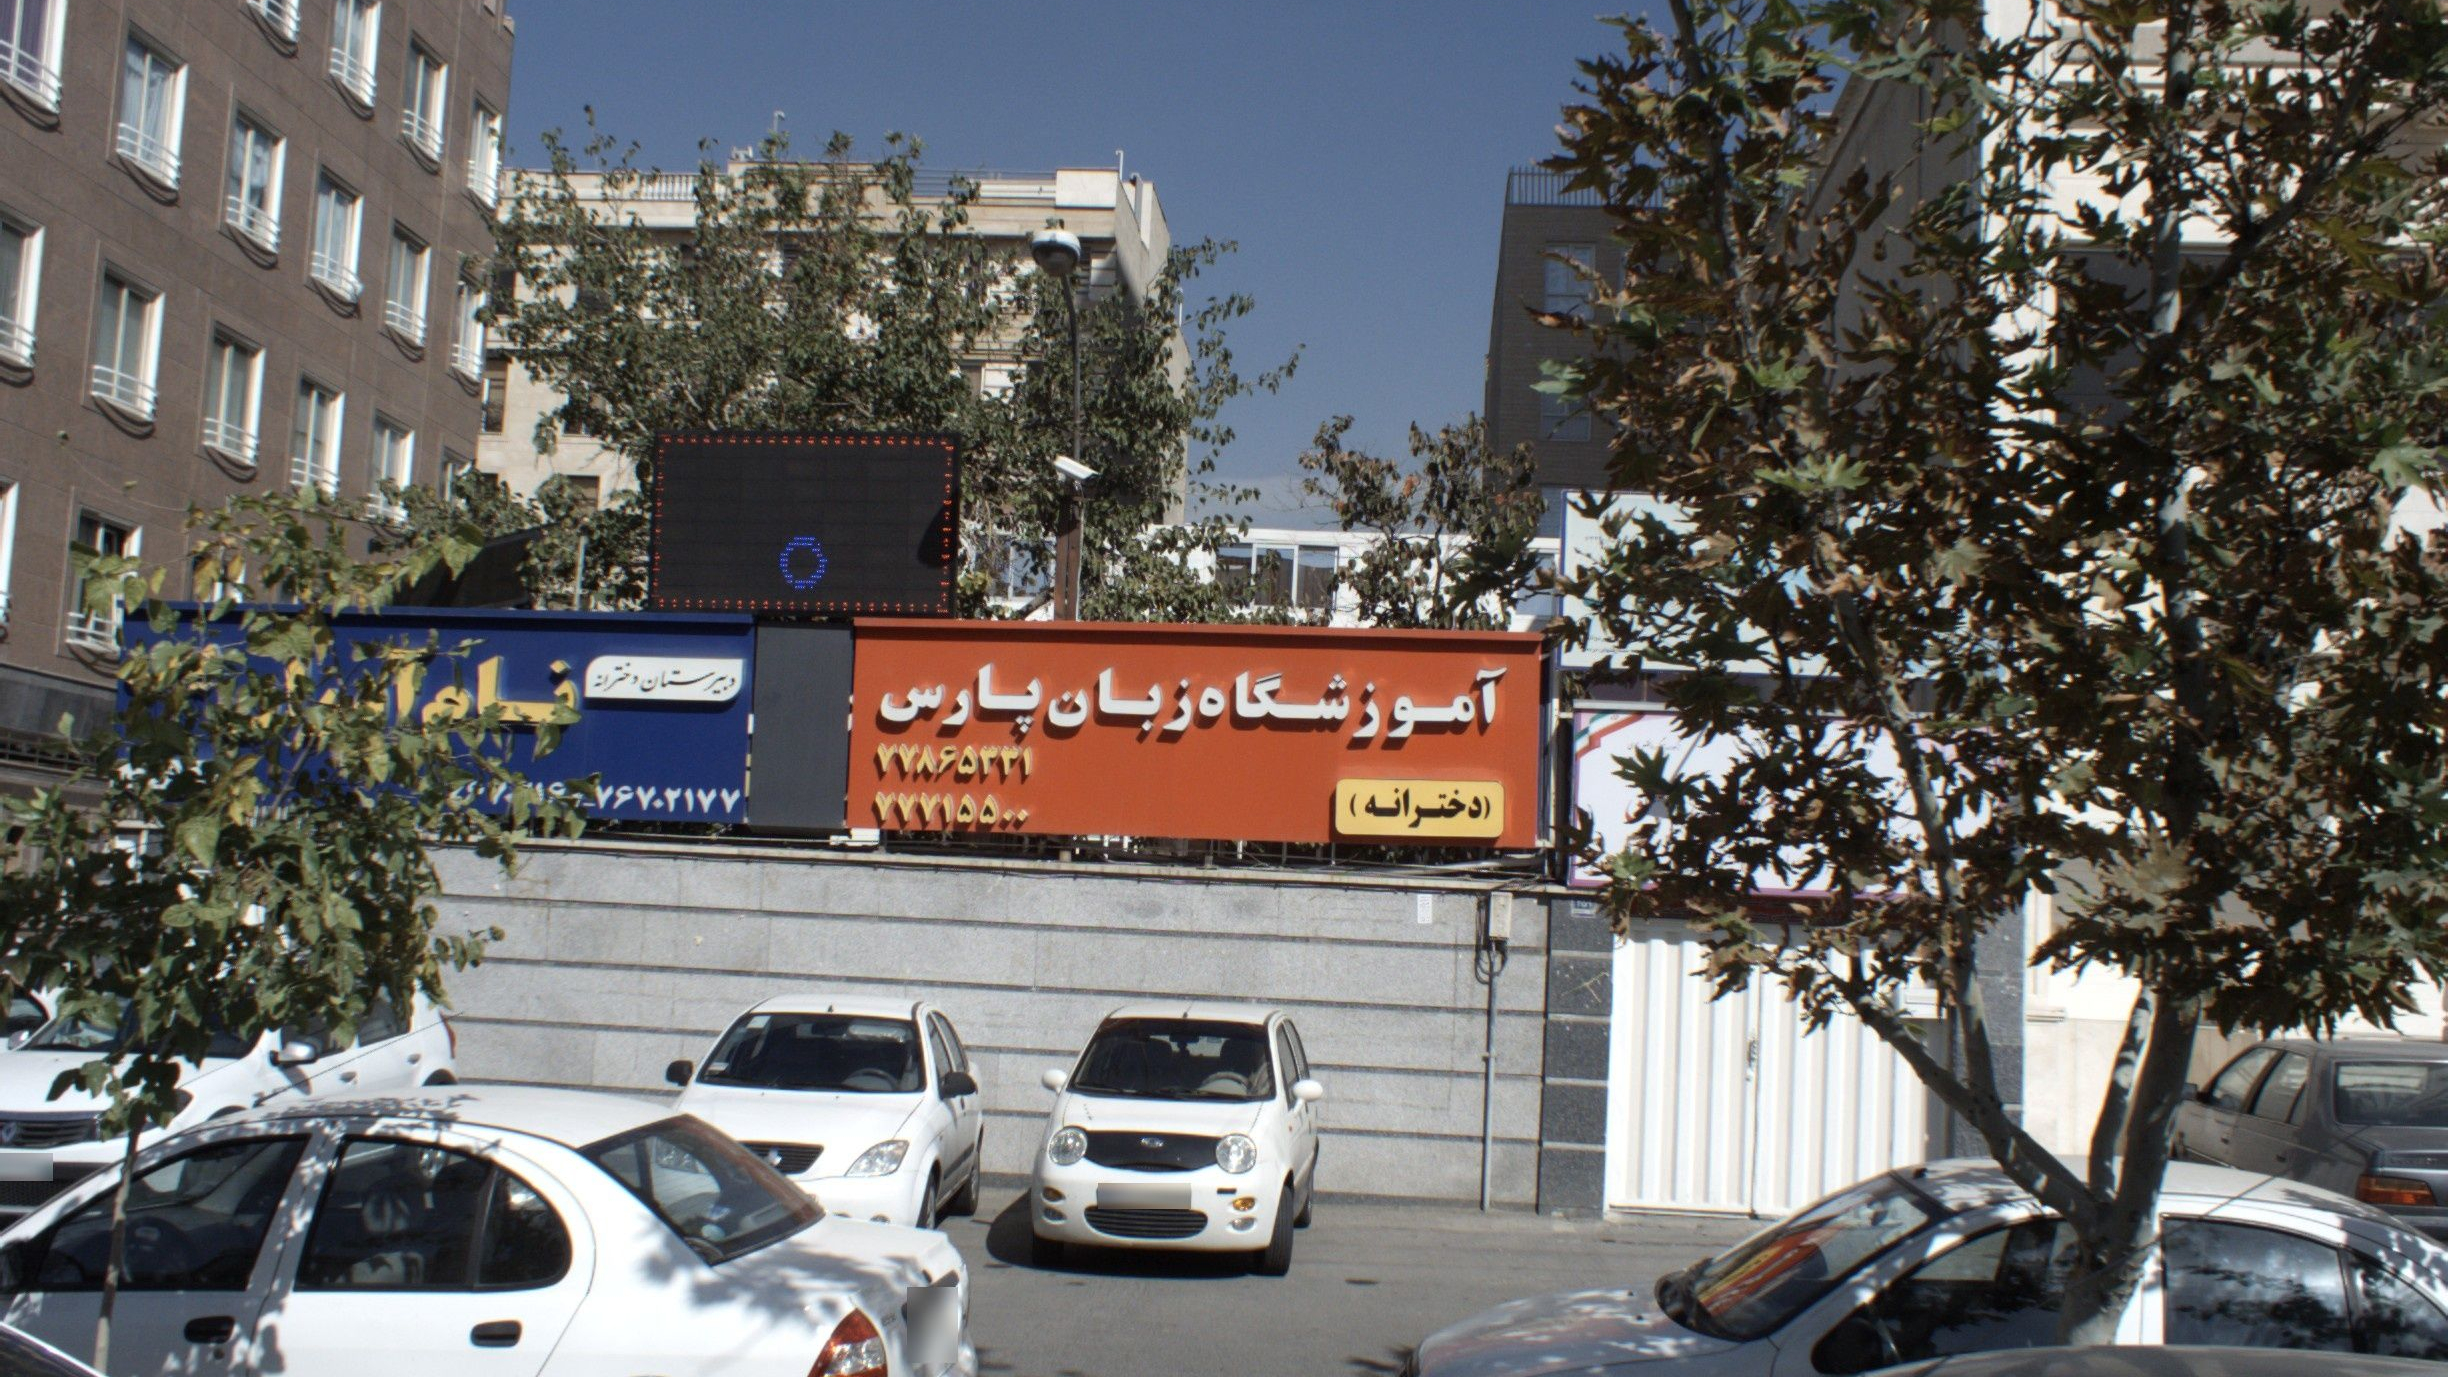 آموزشگاه زبان پارس